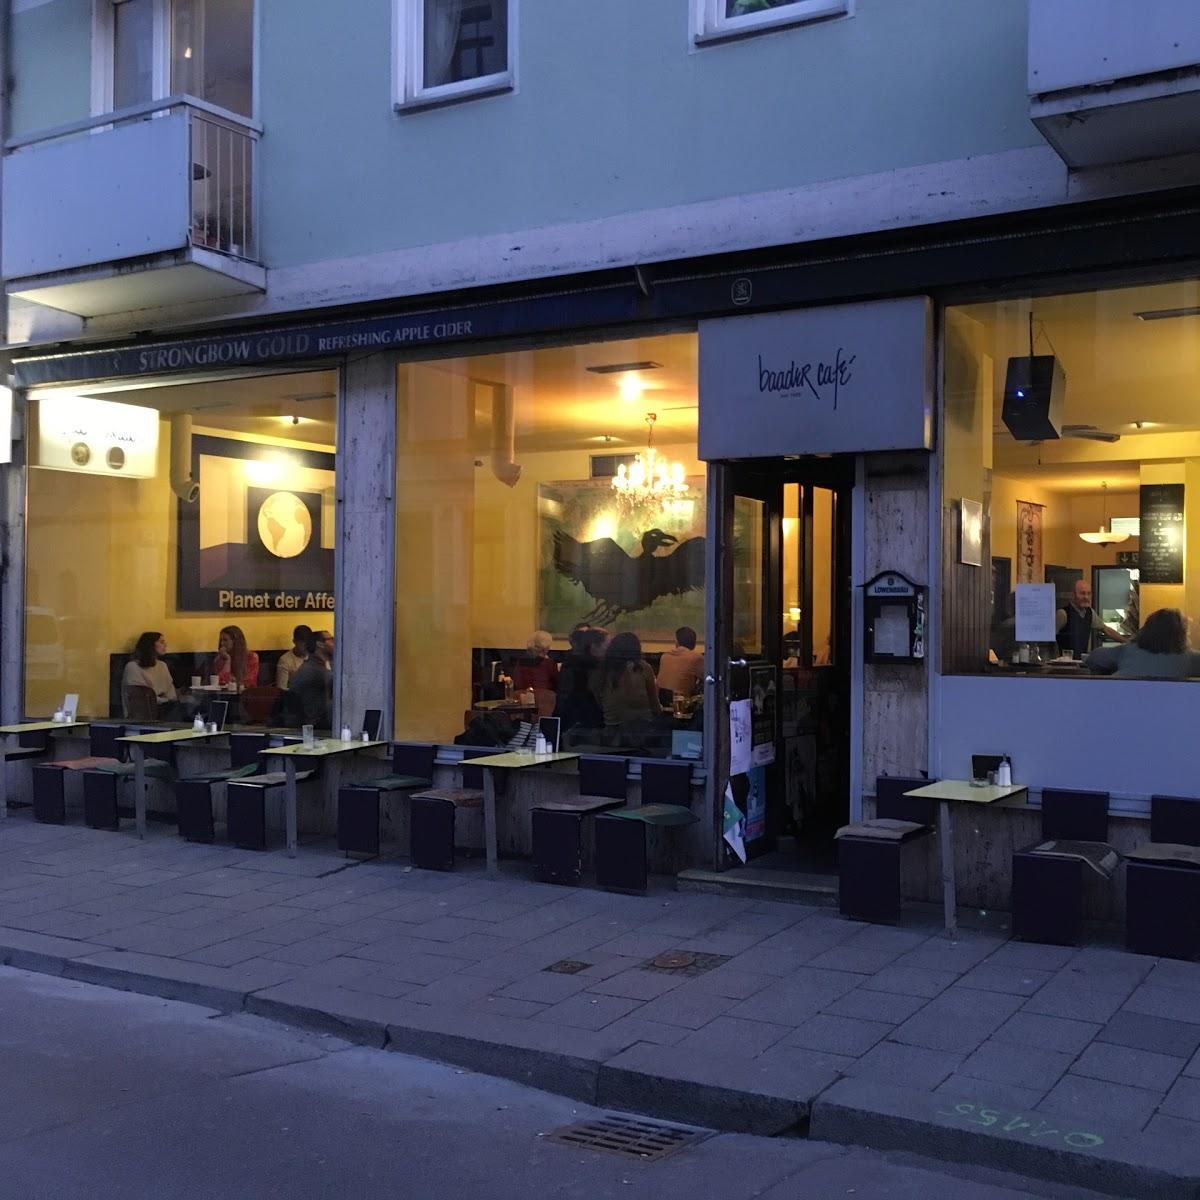 Restaurant "Baader Cafe" in München